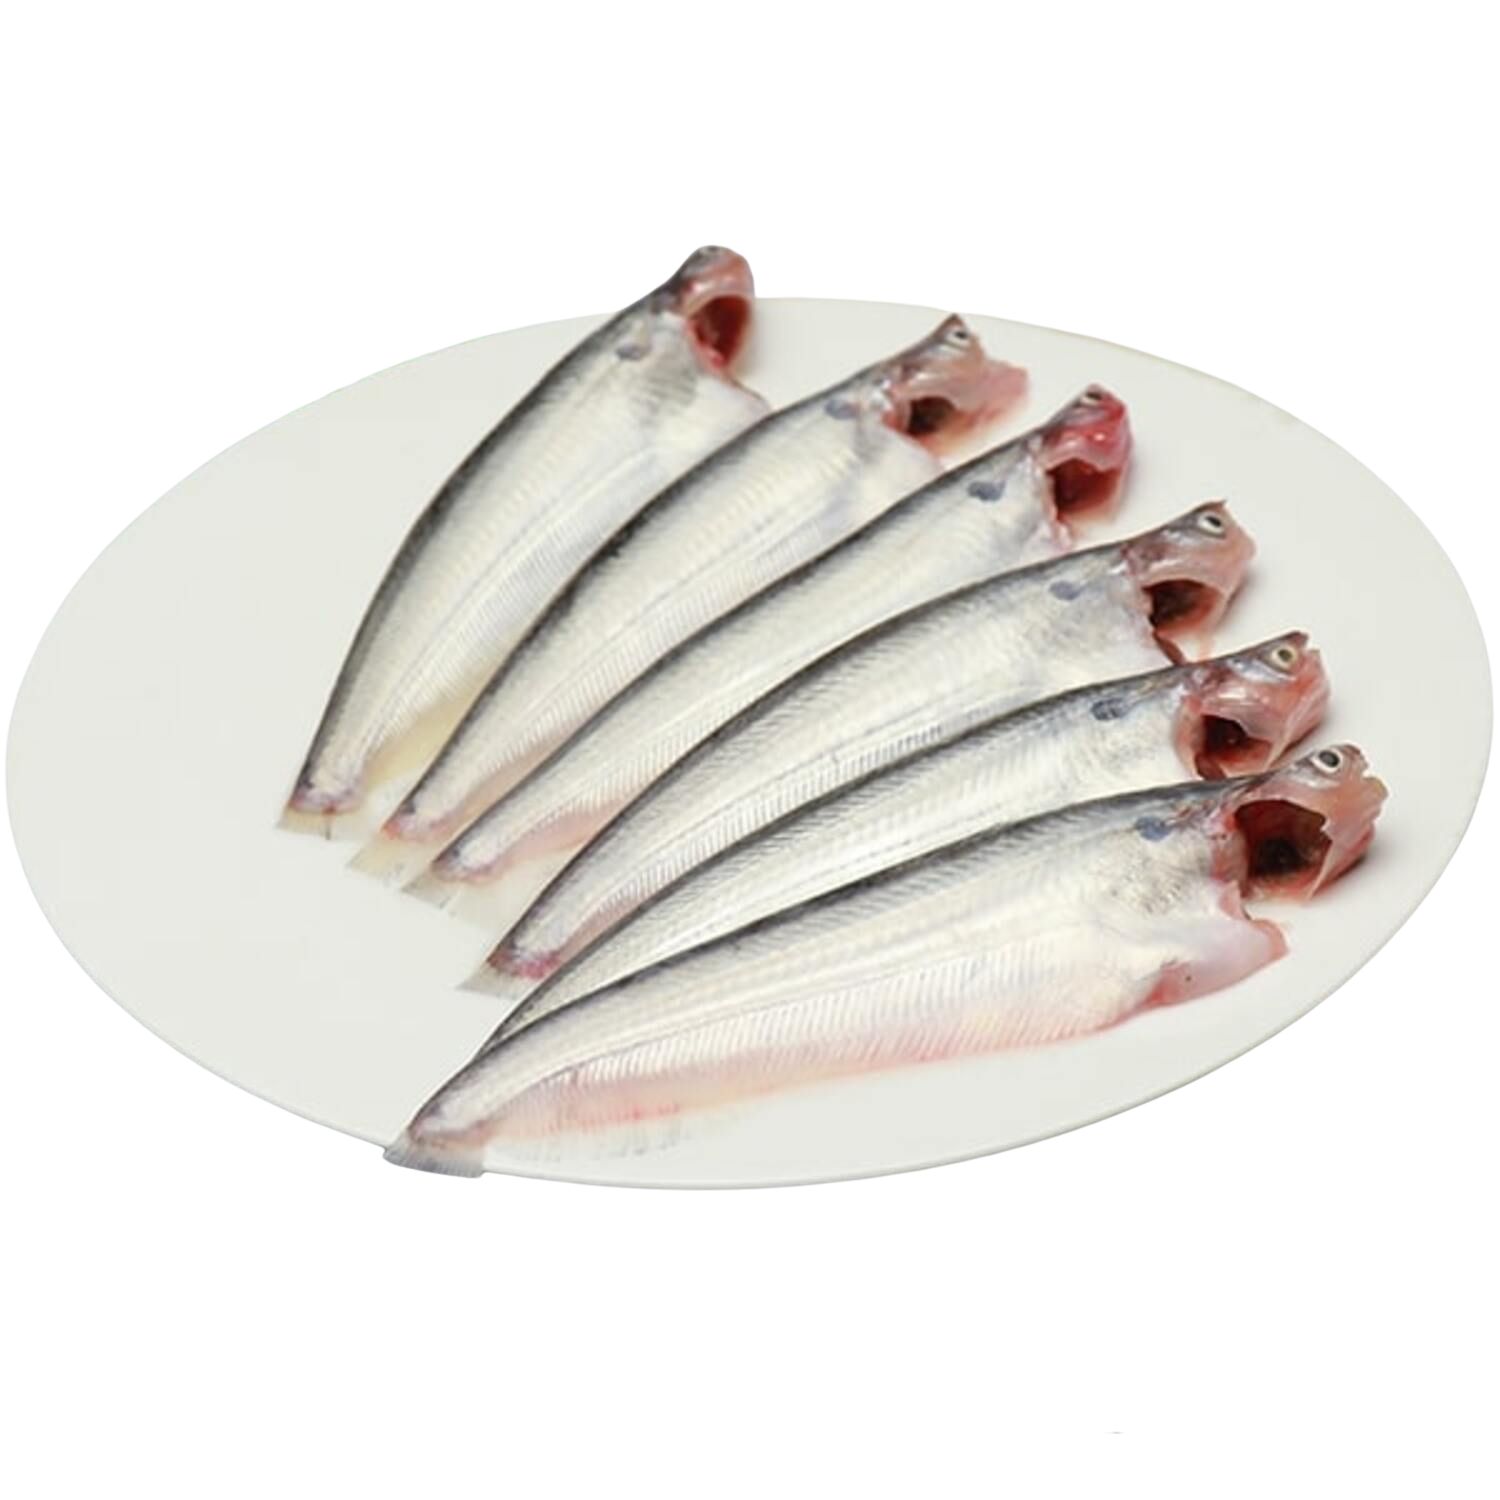 Pabda Fish - Medium Size,Whole, Cleaned